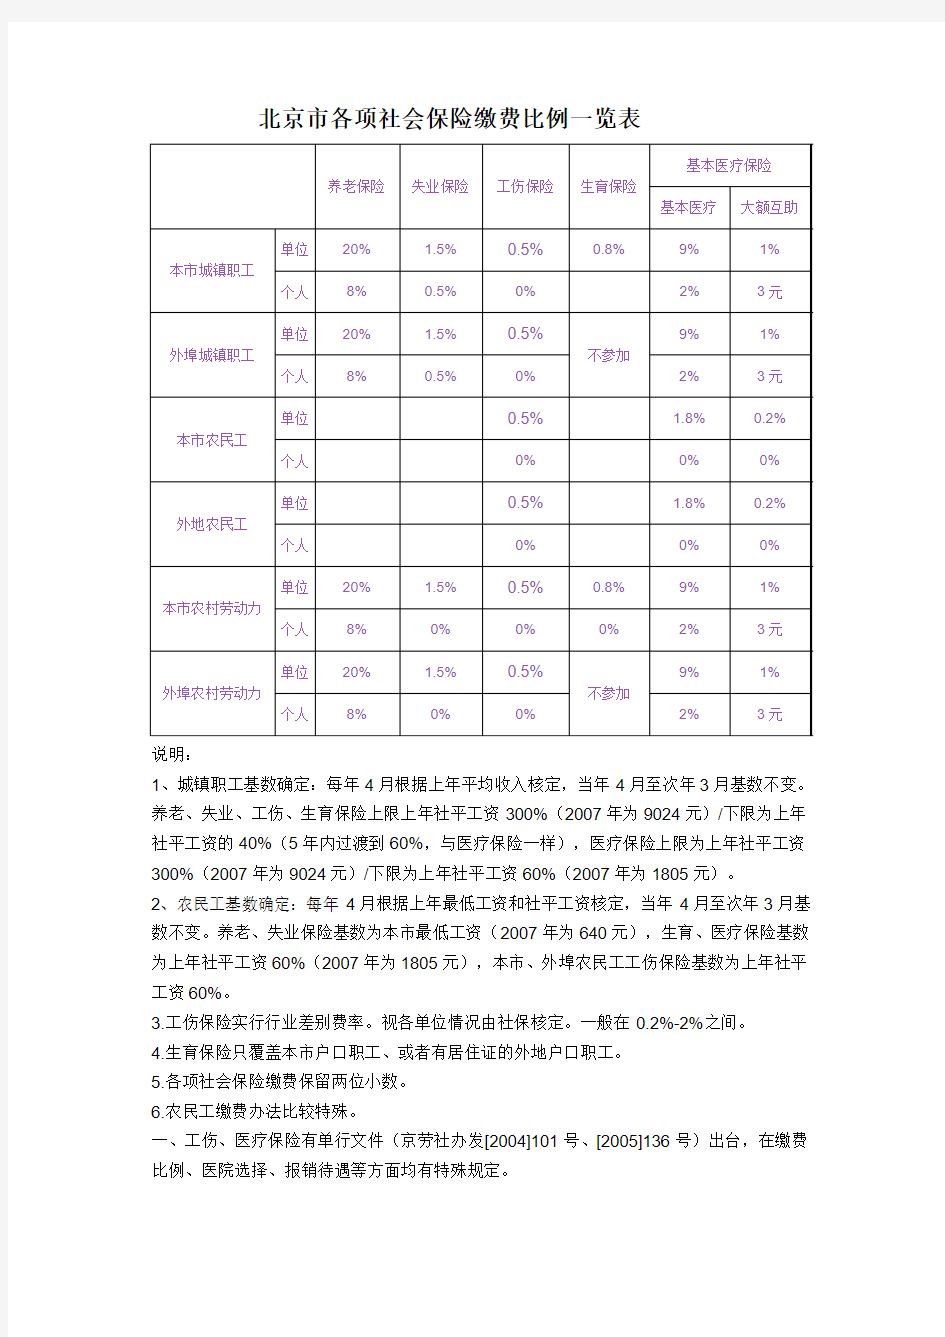 北京市各项社会保险缴费比例一览表